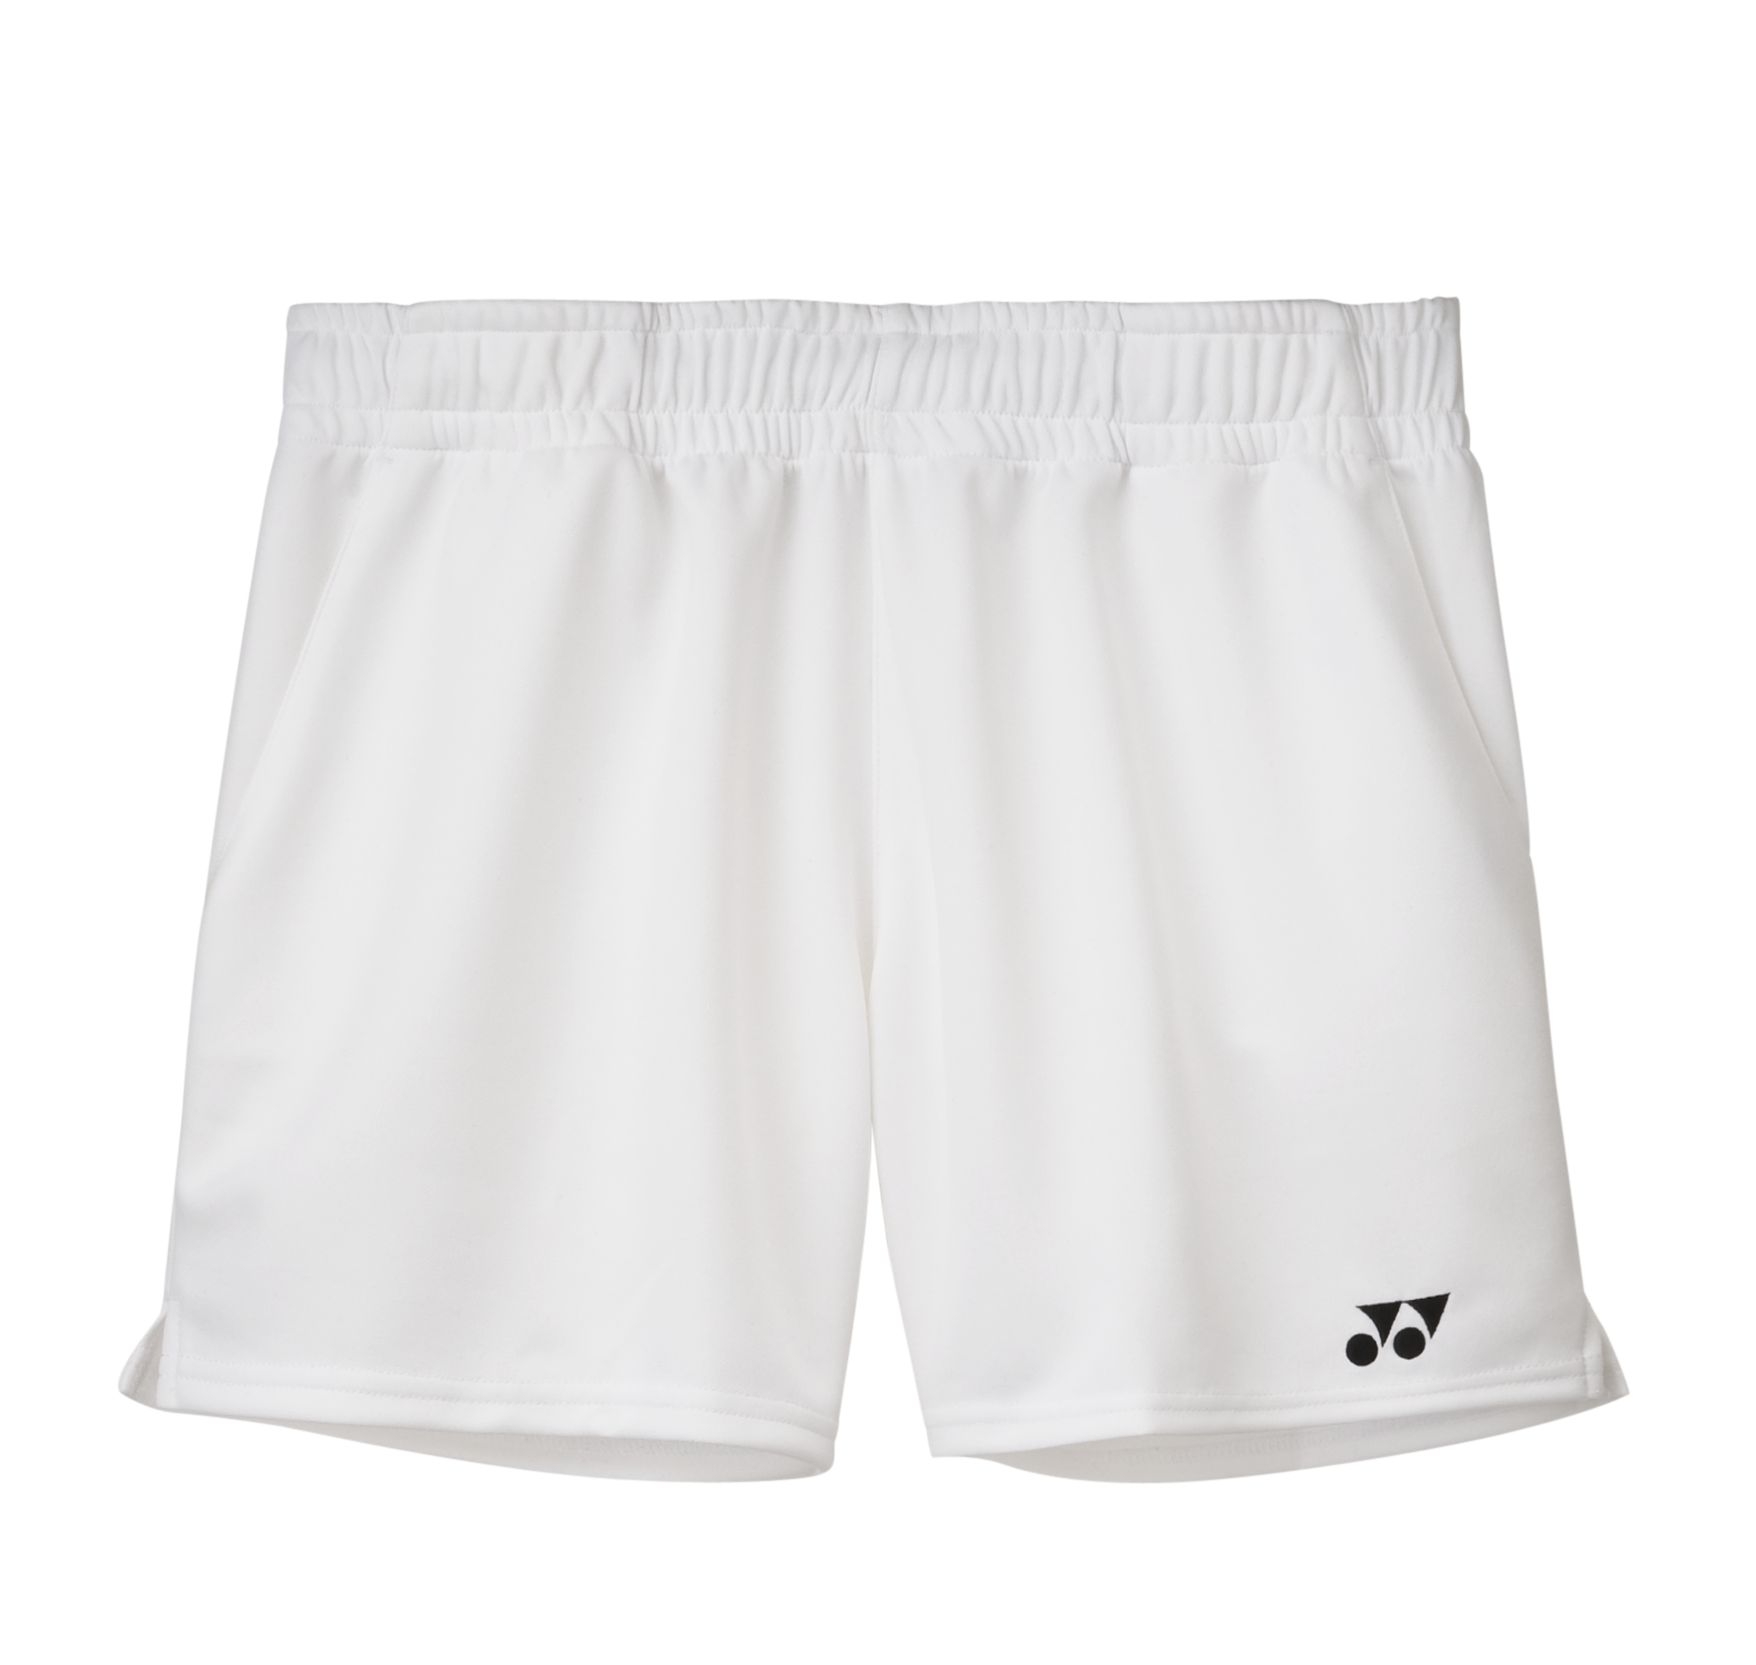 Yonex Women's Game Short Pants L3480EX WHITE - FINAL SALE